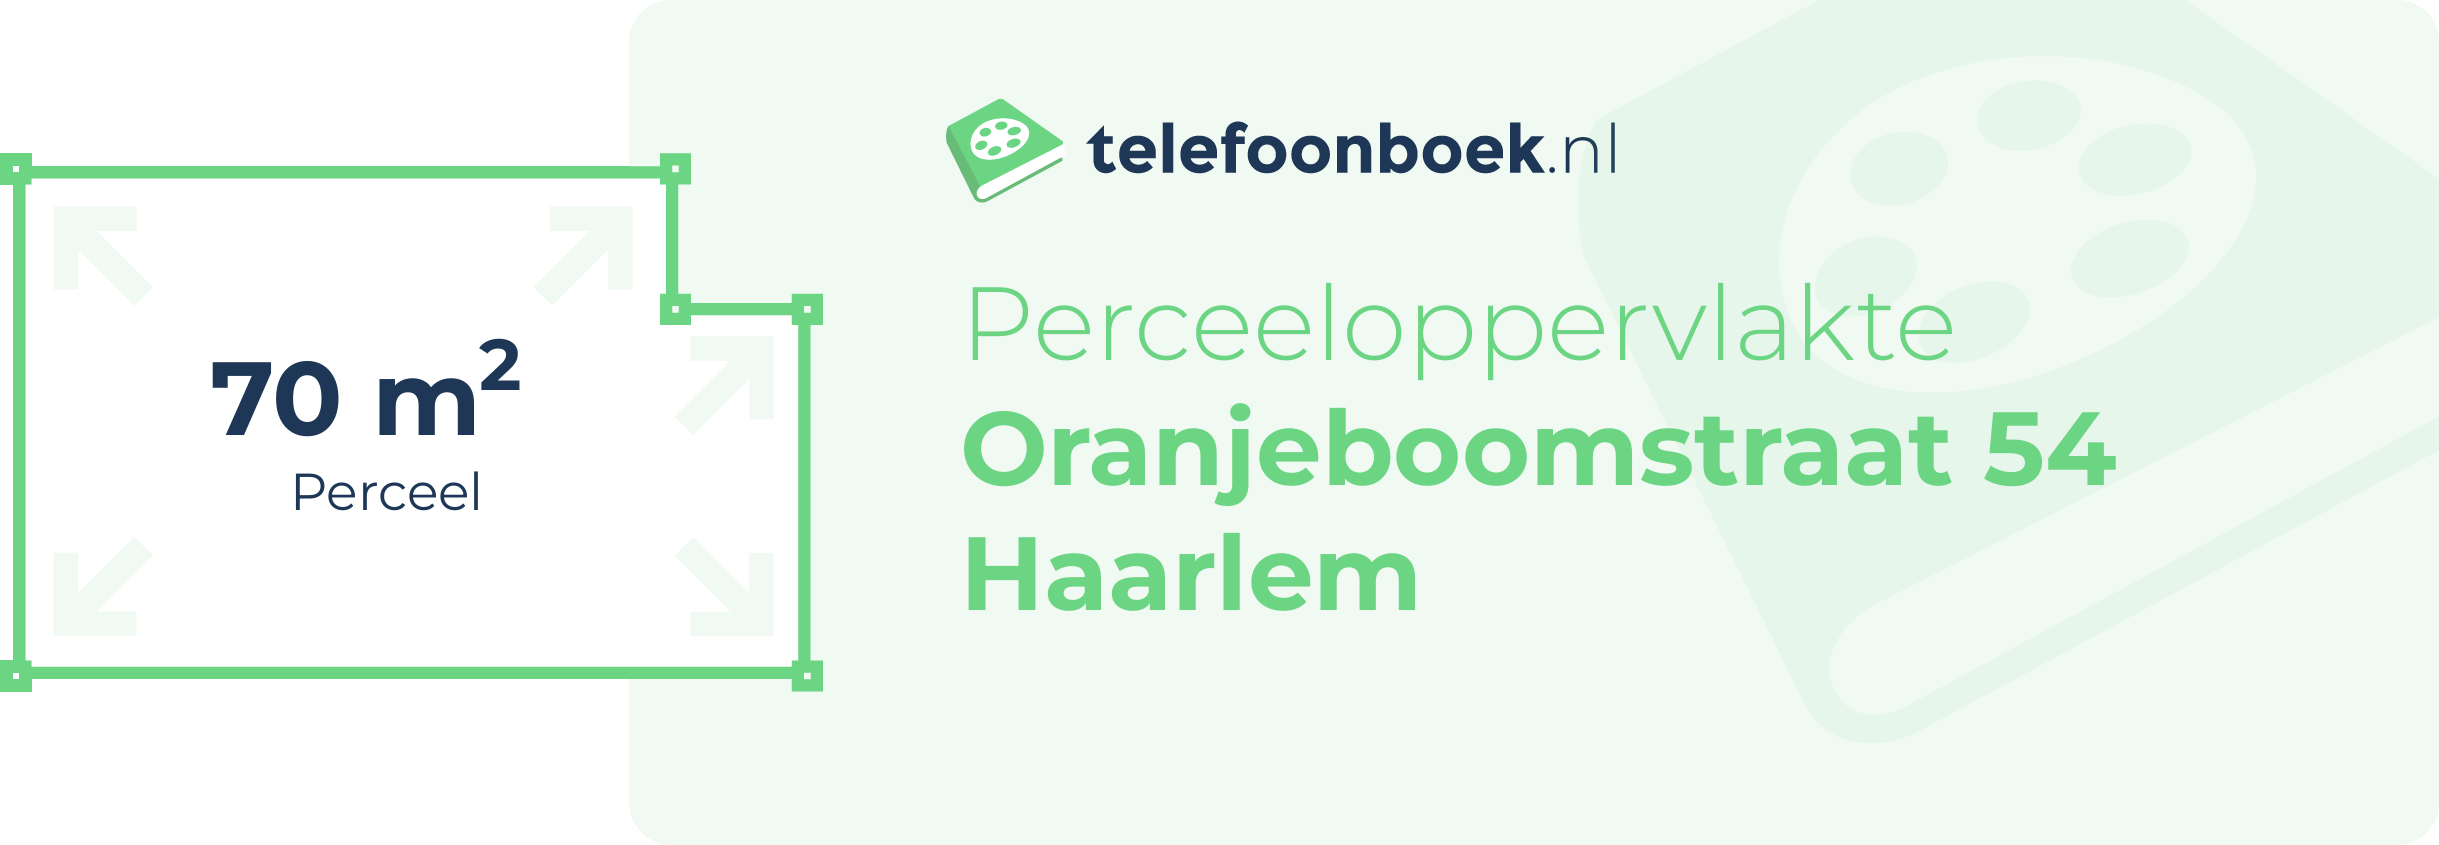 Perceeloppervlakte Oranjeboomstraat 54 Haarlem